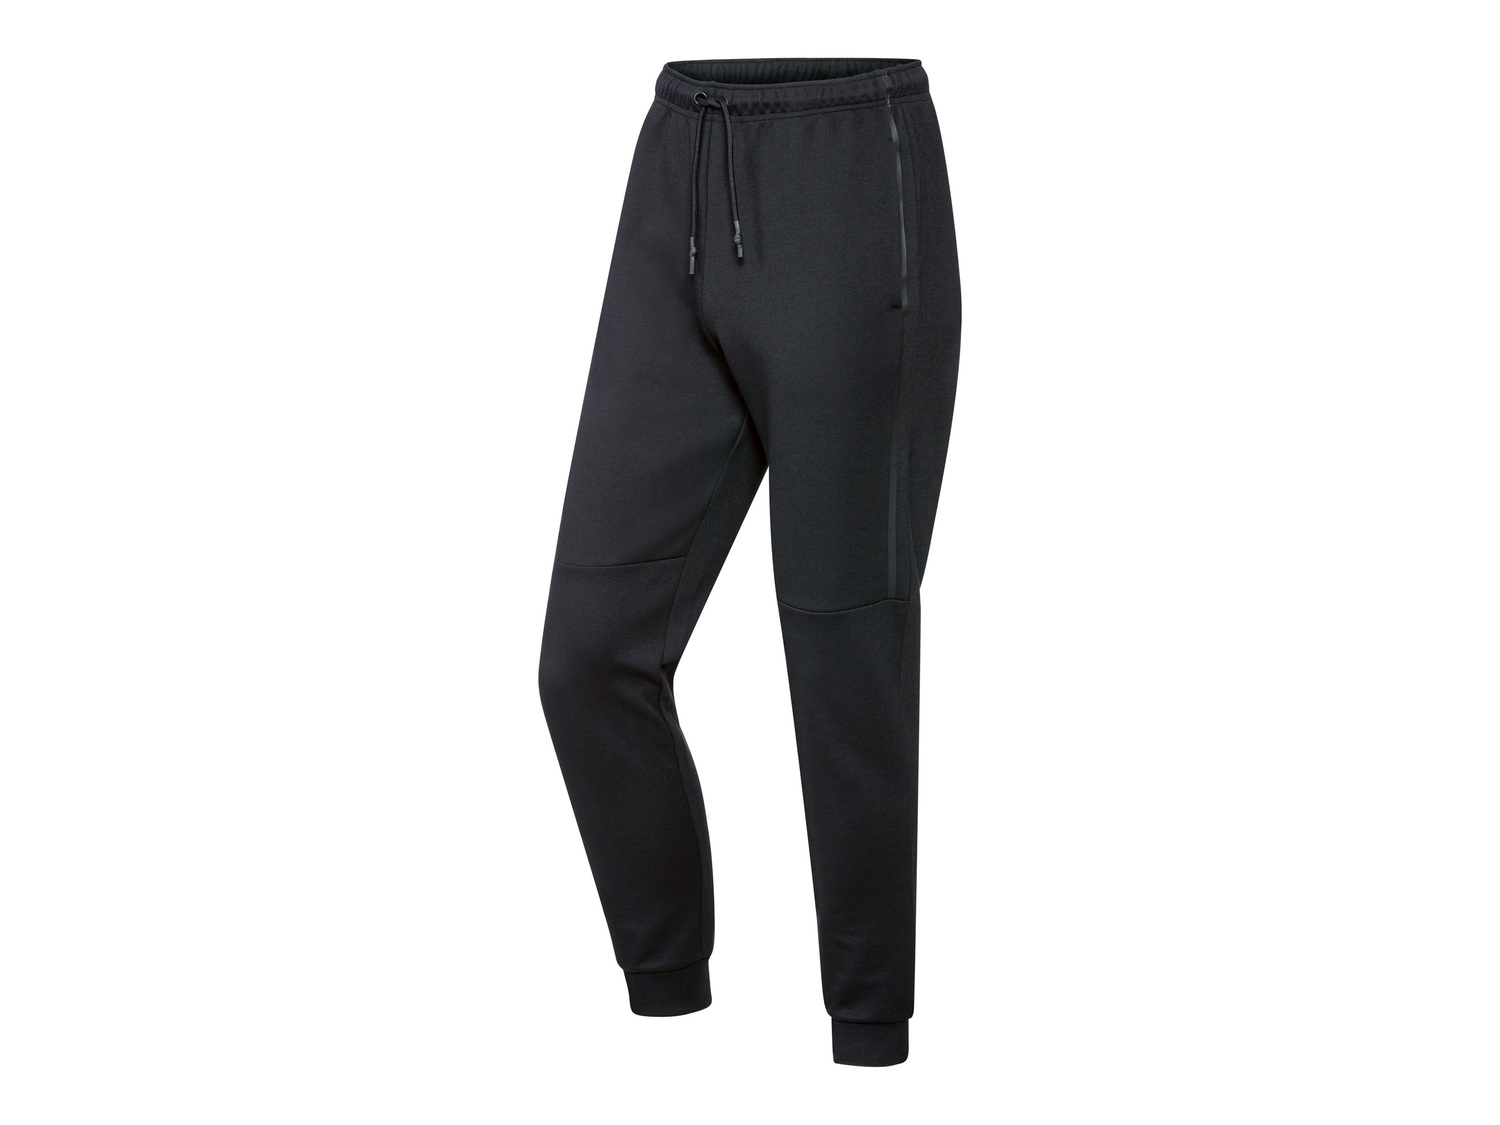 Pantaloni sportivi da uomo Crivit, prezzo 9.99 &#8364; 
Misure: S-XL
Taglie ...